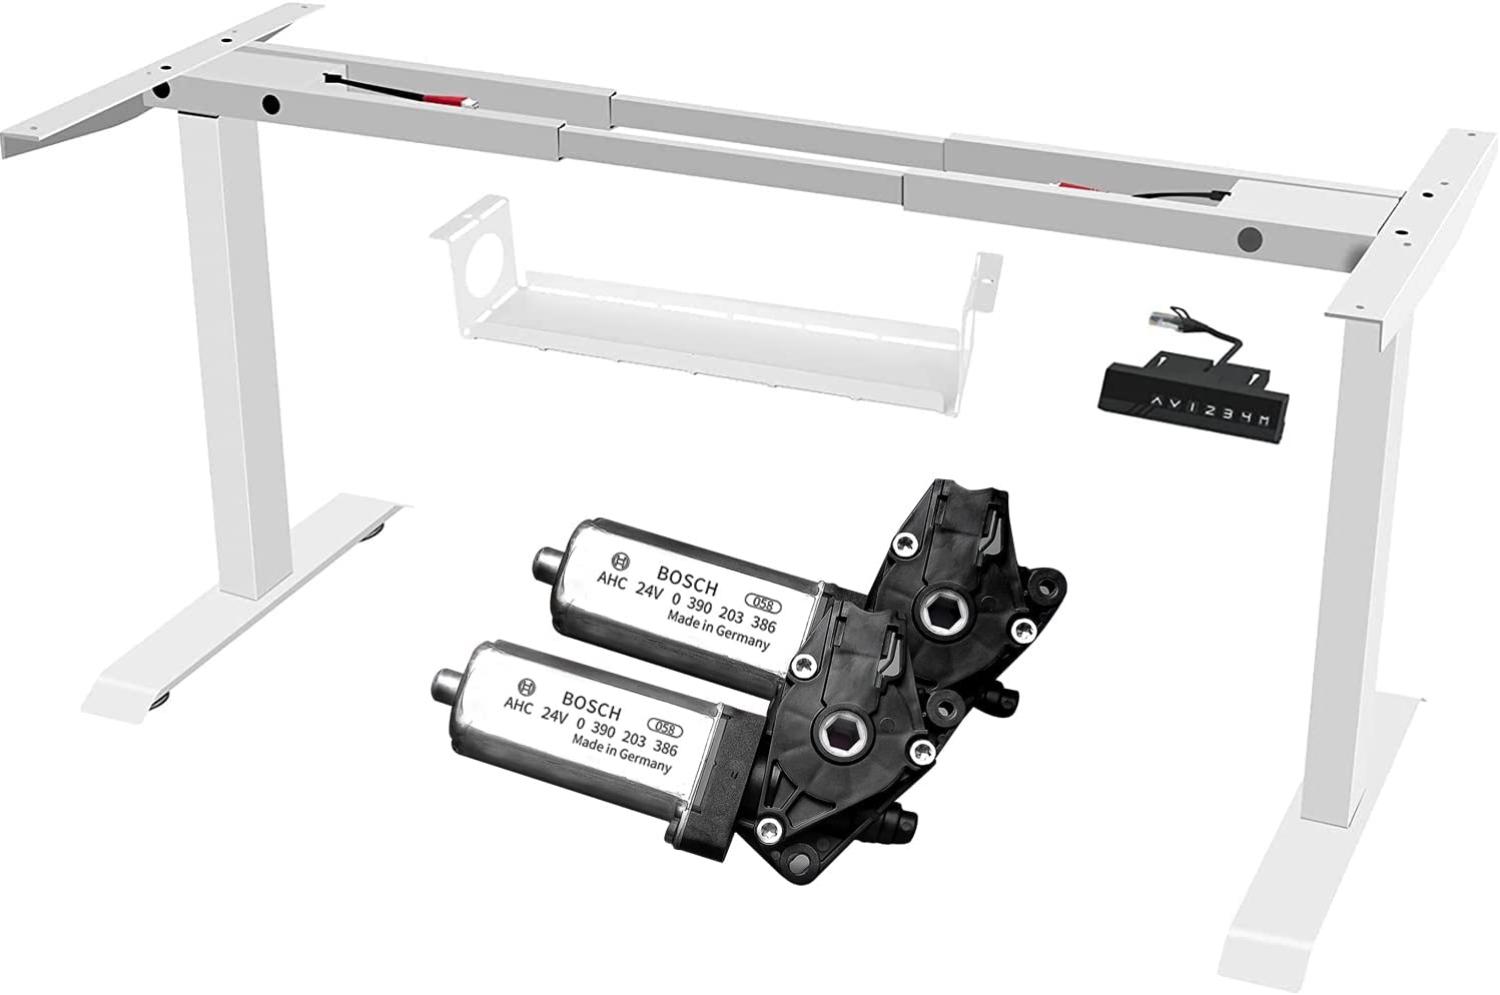 FANZTOOL höhenverstellbarer Schreibtisch-Gestell mit 2 x Bosch Motoren elektrisch stufenlos in Weiß, Arbeitstisch Tischbeine mit Memory-Funktion, USB Steckdose, Kabelwanne Bild 1